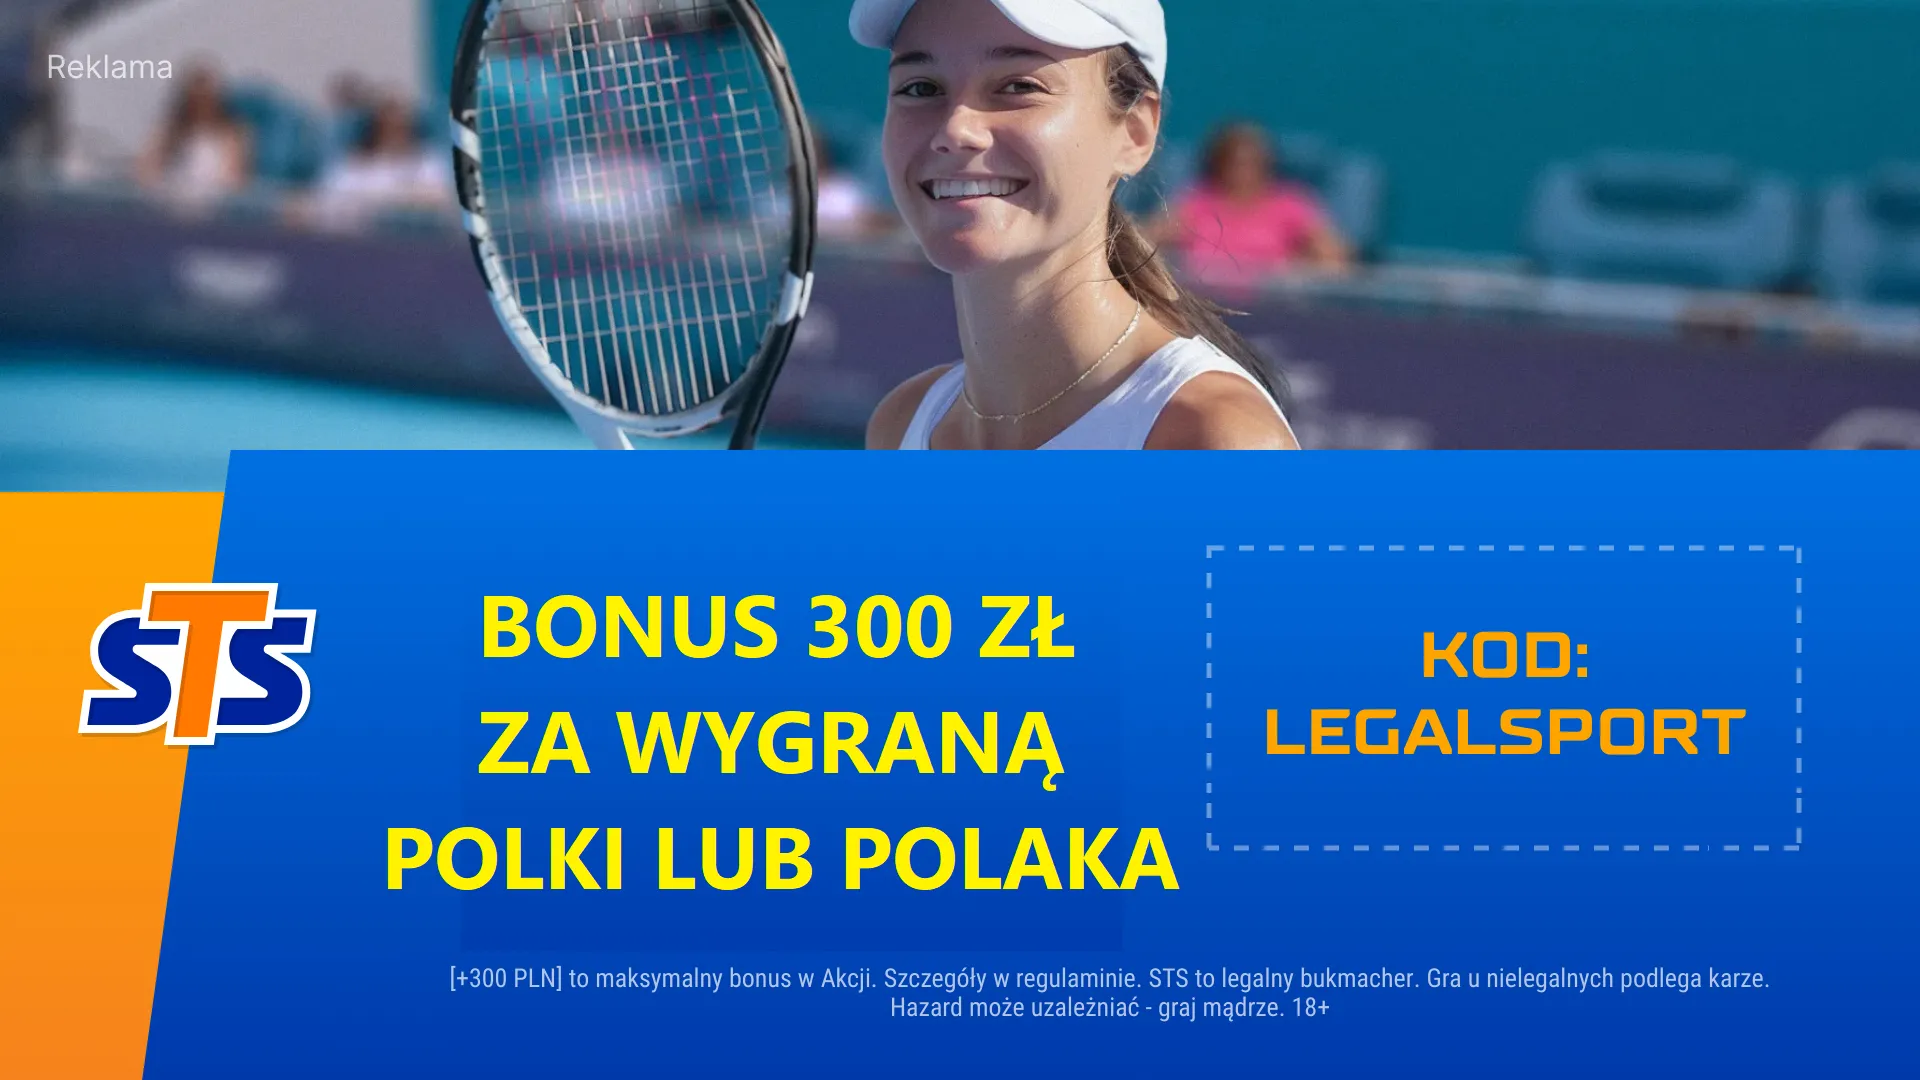 300 zł bonusu za wygraną Polki lub Polaka w Miami Open